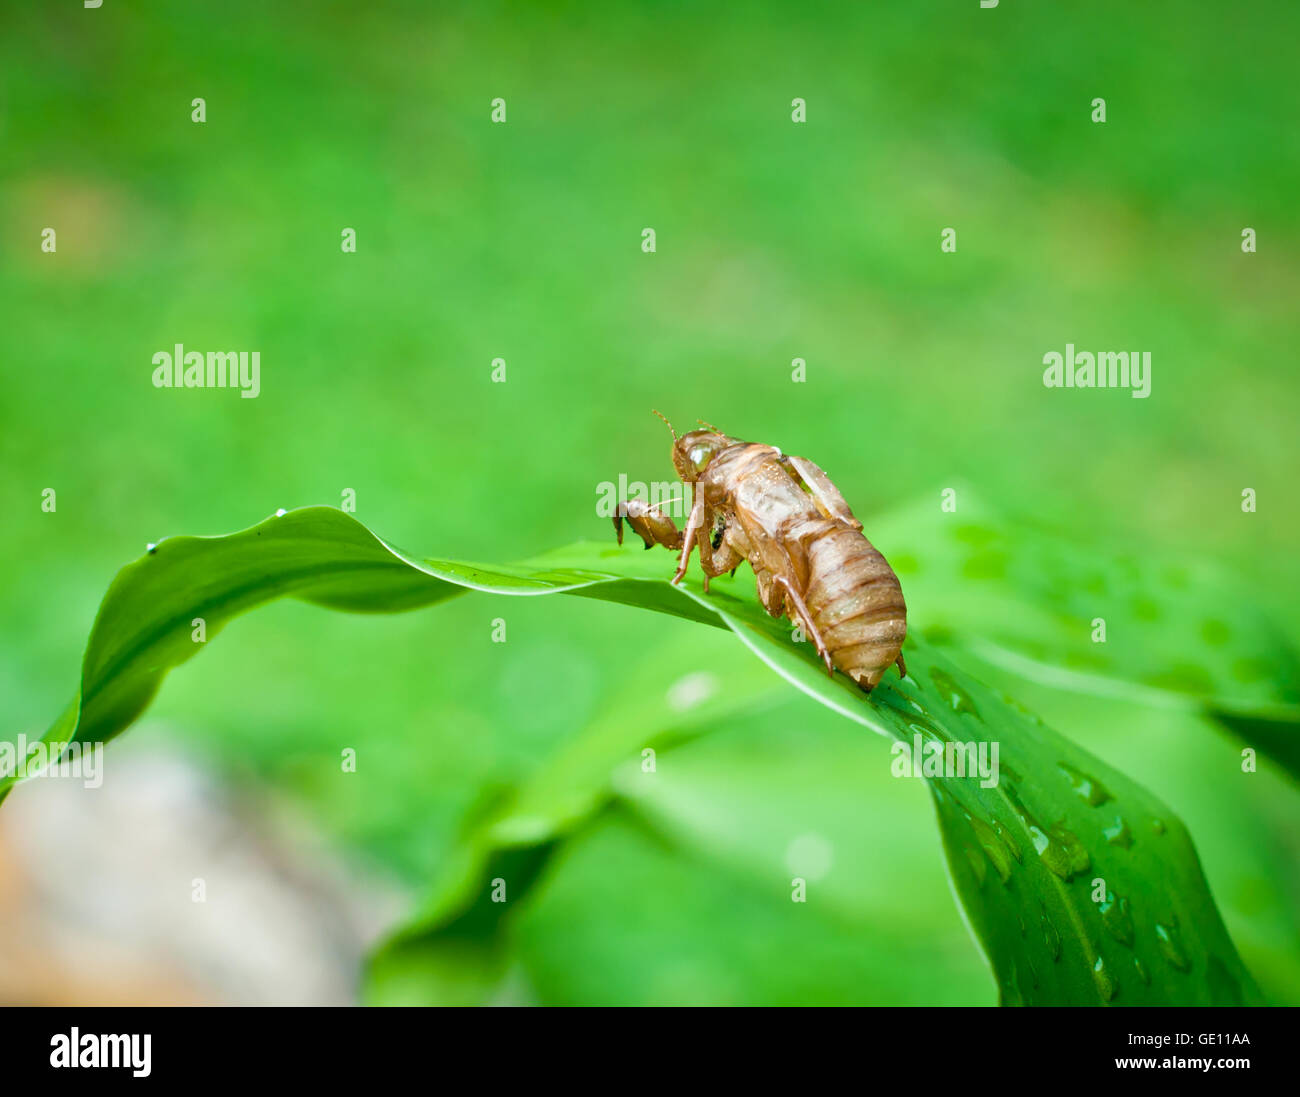 Cicada shell on the tree. Stock Photo